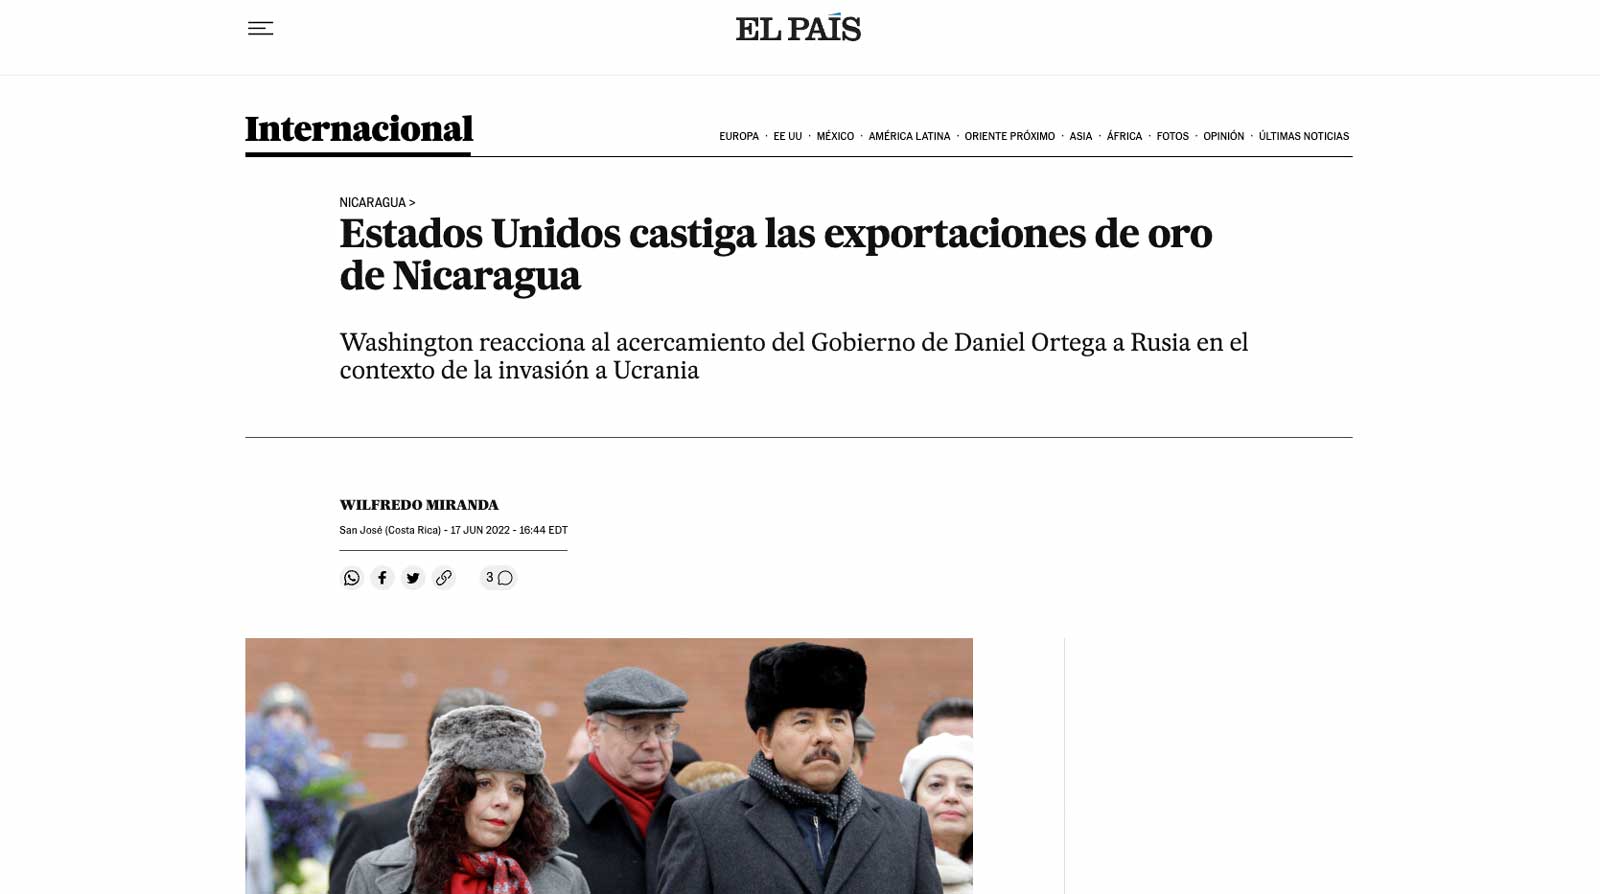 El Pais article screenshot